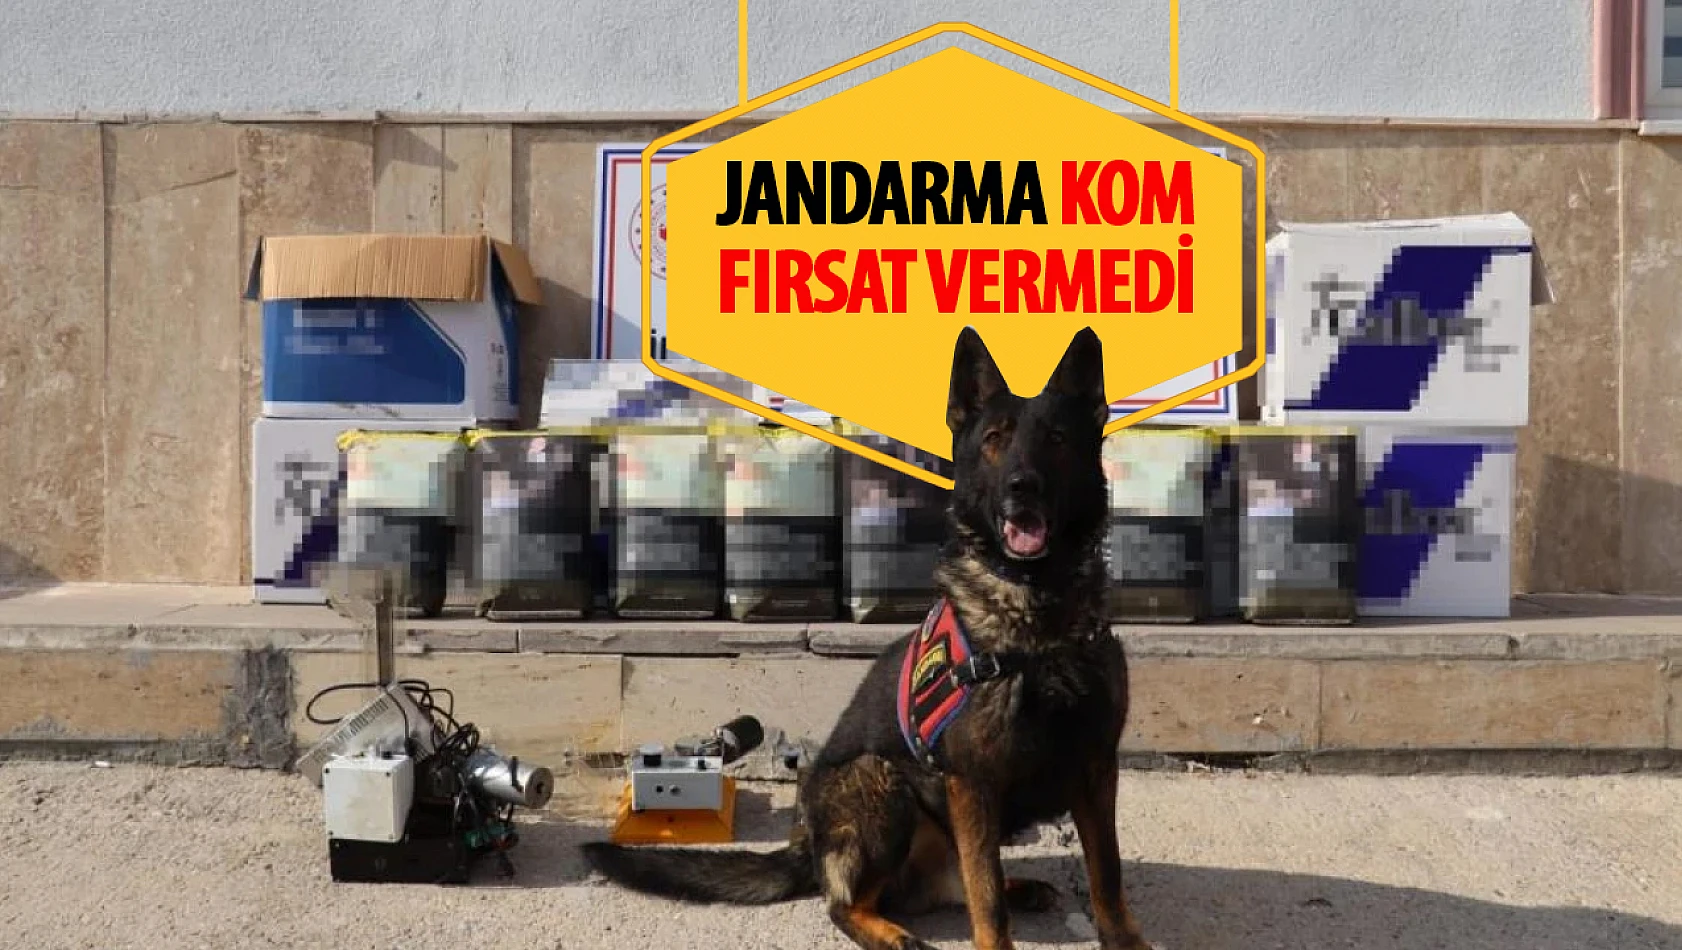 Karaman'da Jandarma'dan kaçak tütün operasyonu: 2 tutuklama